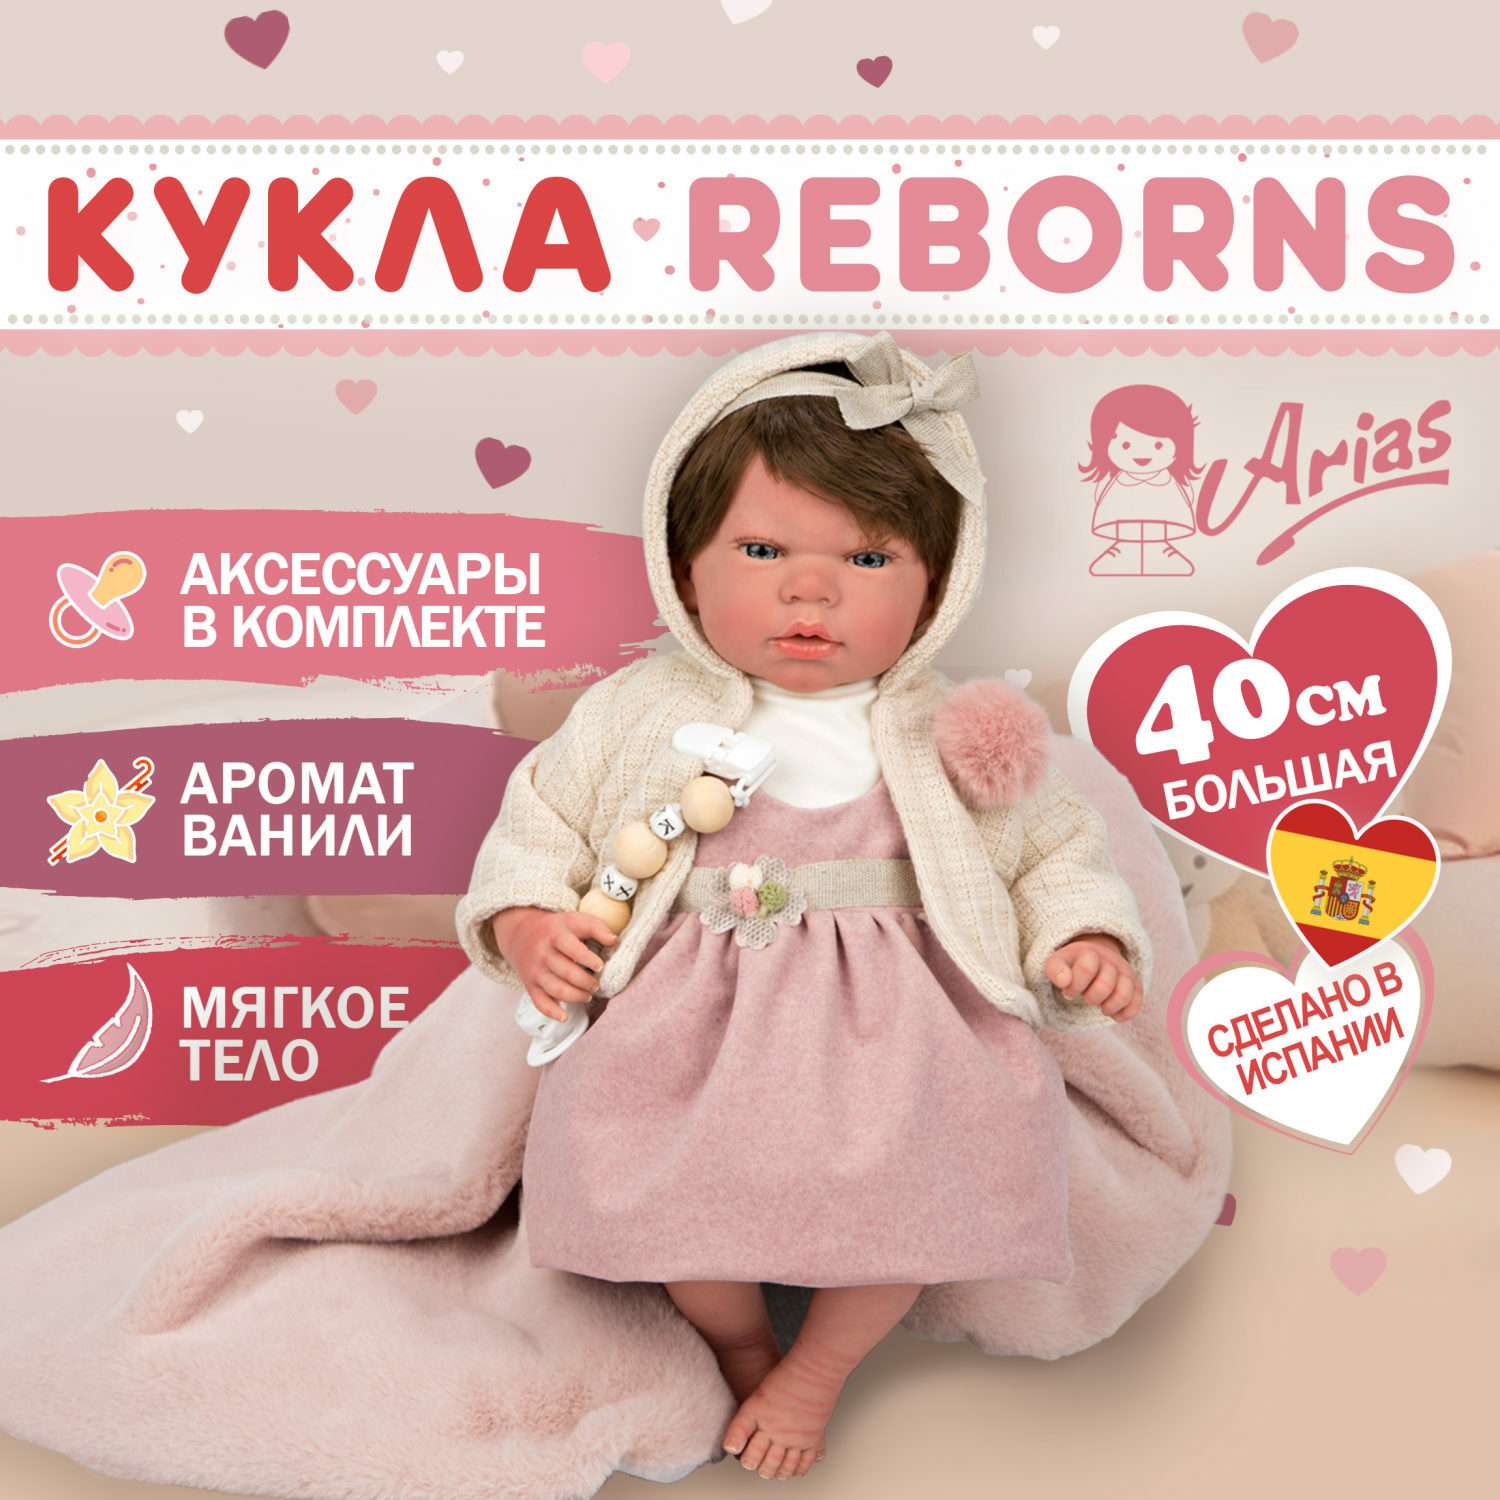 Кукла Arias Reborns Chloe новорожденный пупс мягкий 40 см реалистичный с пледом Т22929 - фото 2